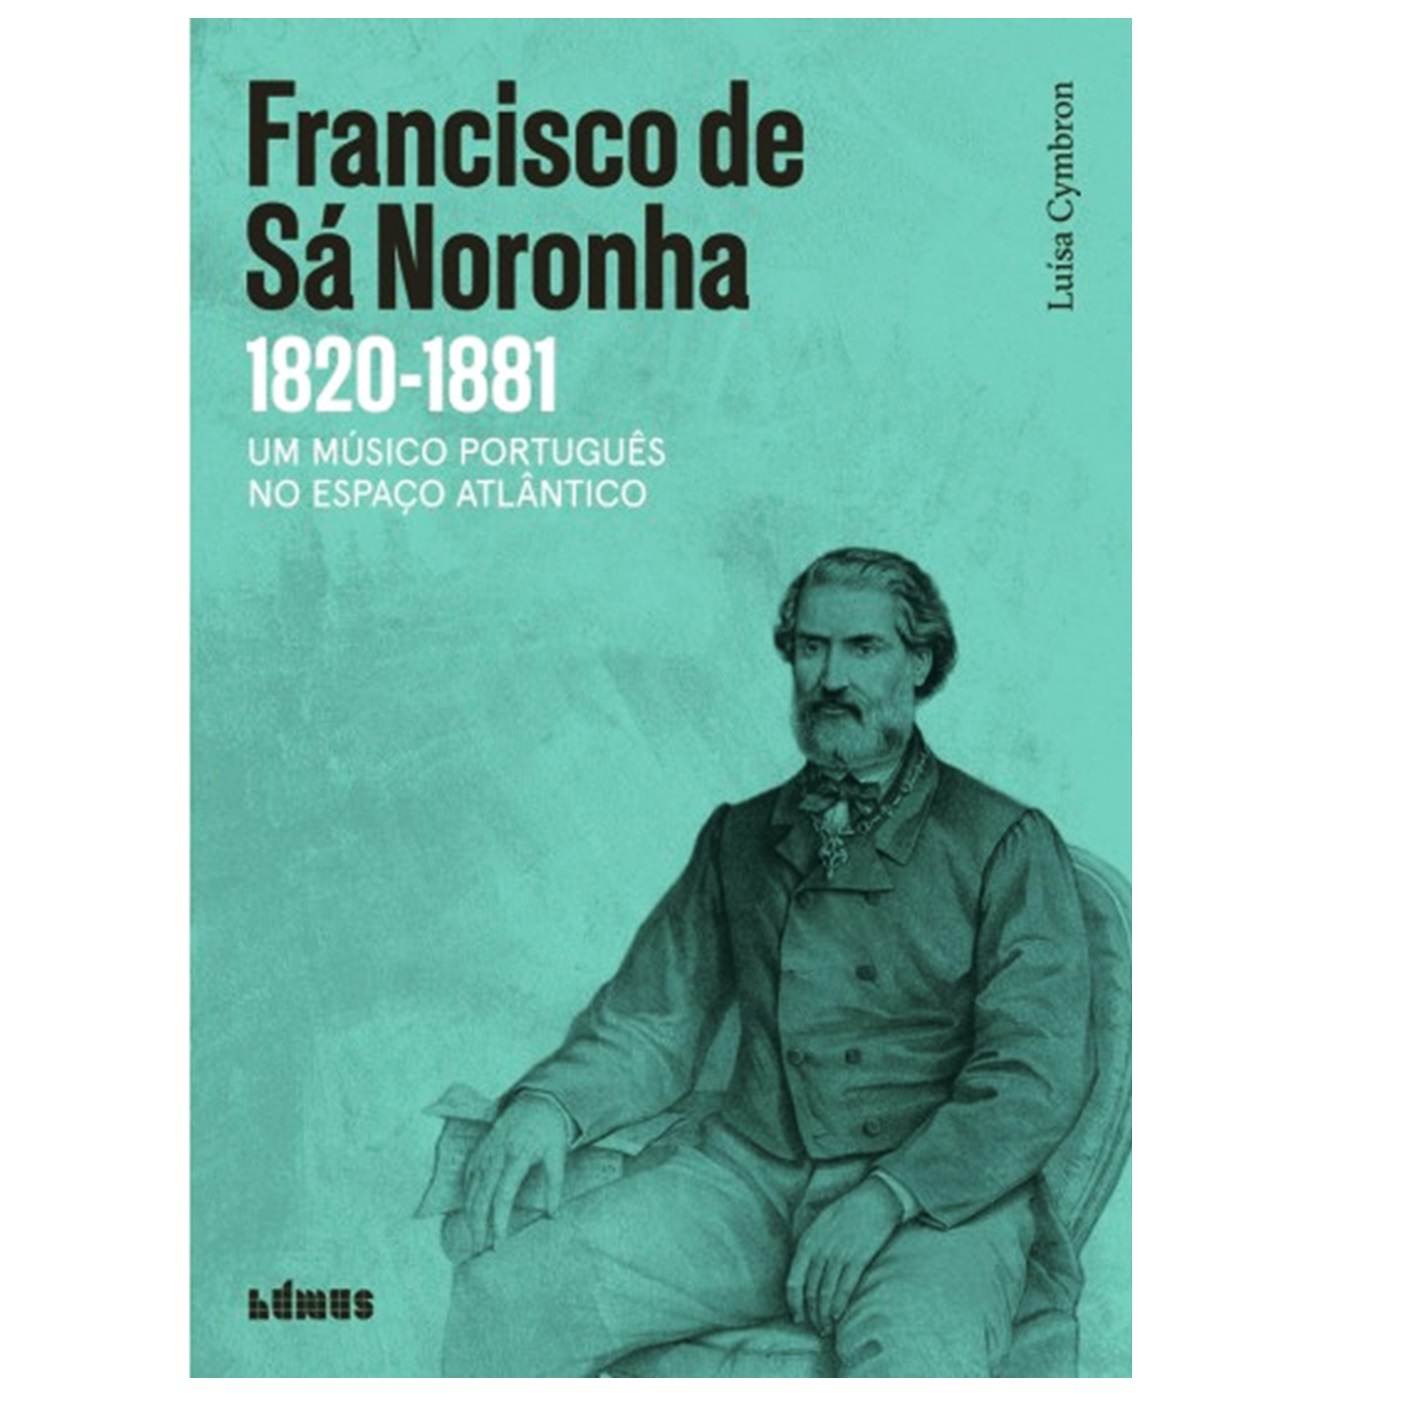 FRANCISCO DE SÁ NORONHA, UM MÚSICO PORTUGUÊS